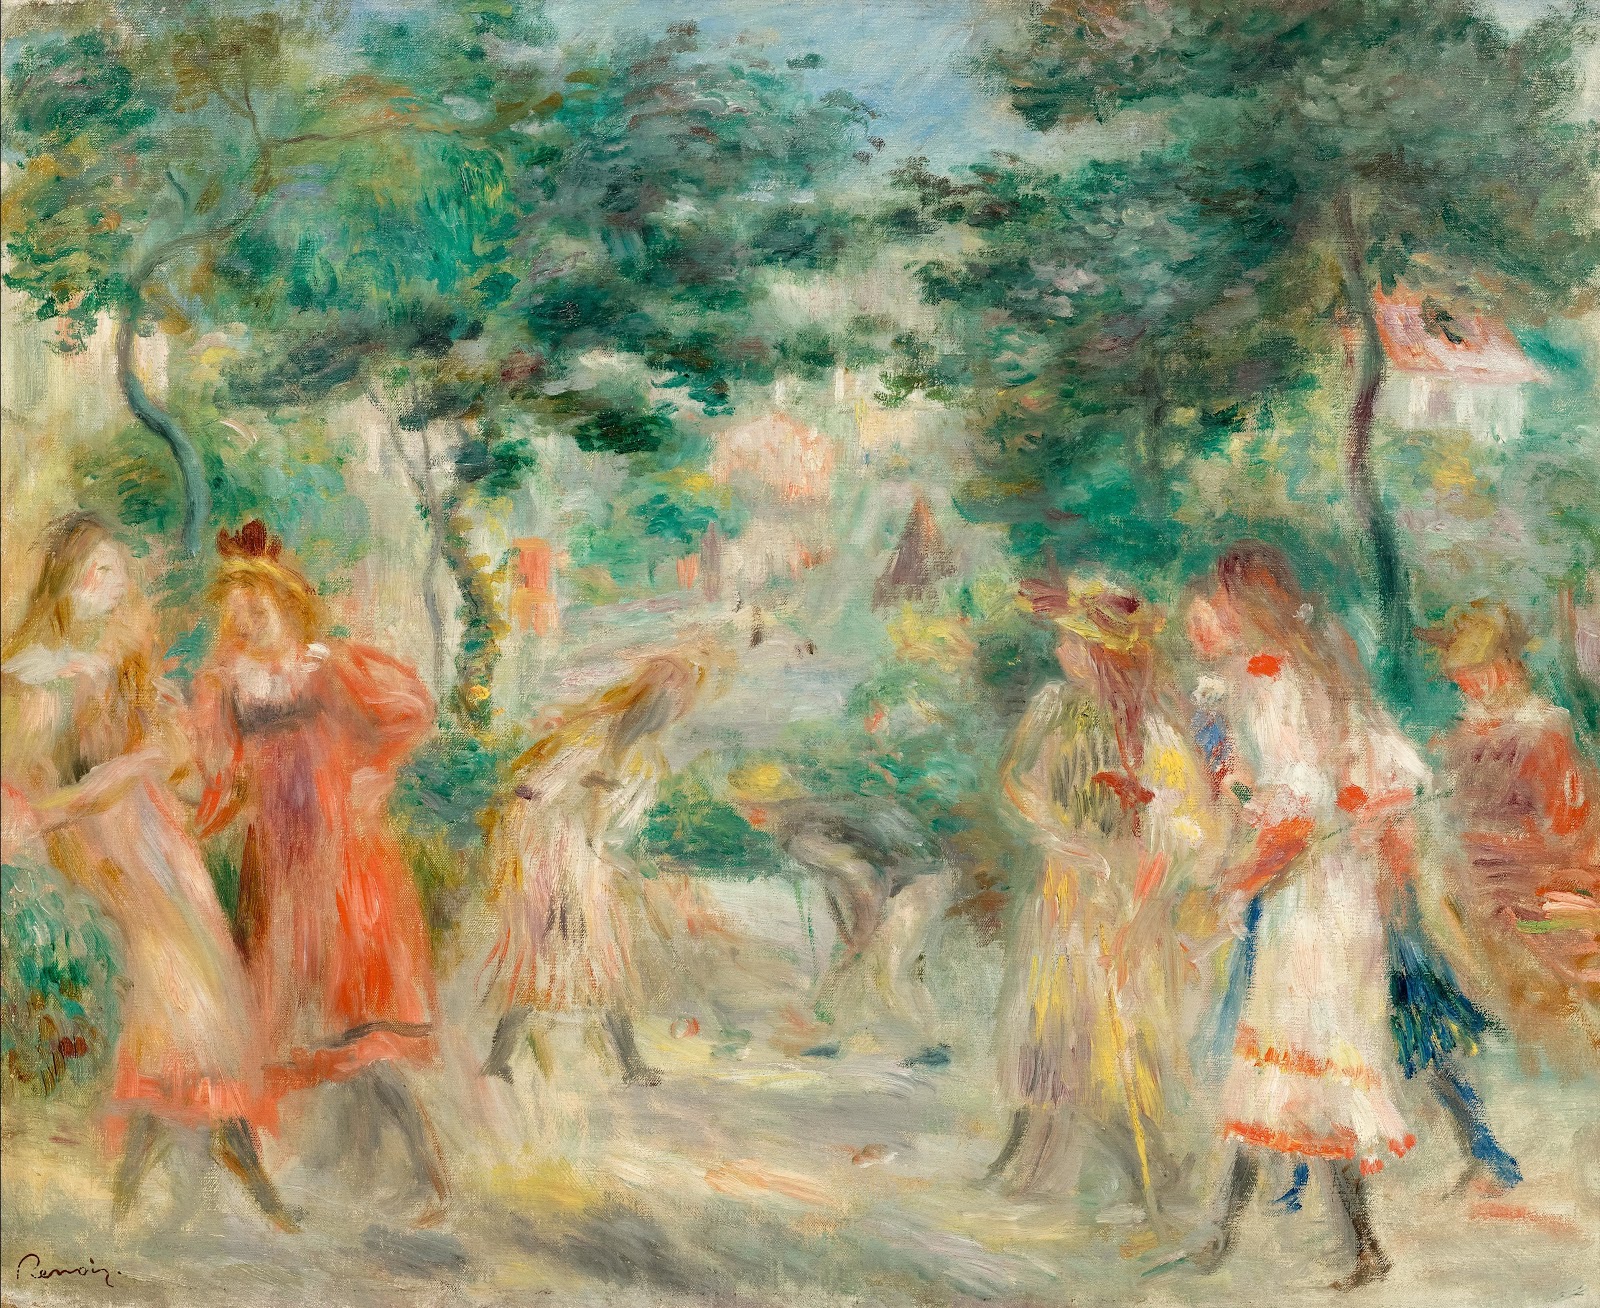 Pierre+Auguste+Renoir-1841-1-19 (151).jpg